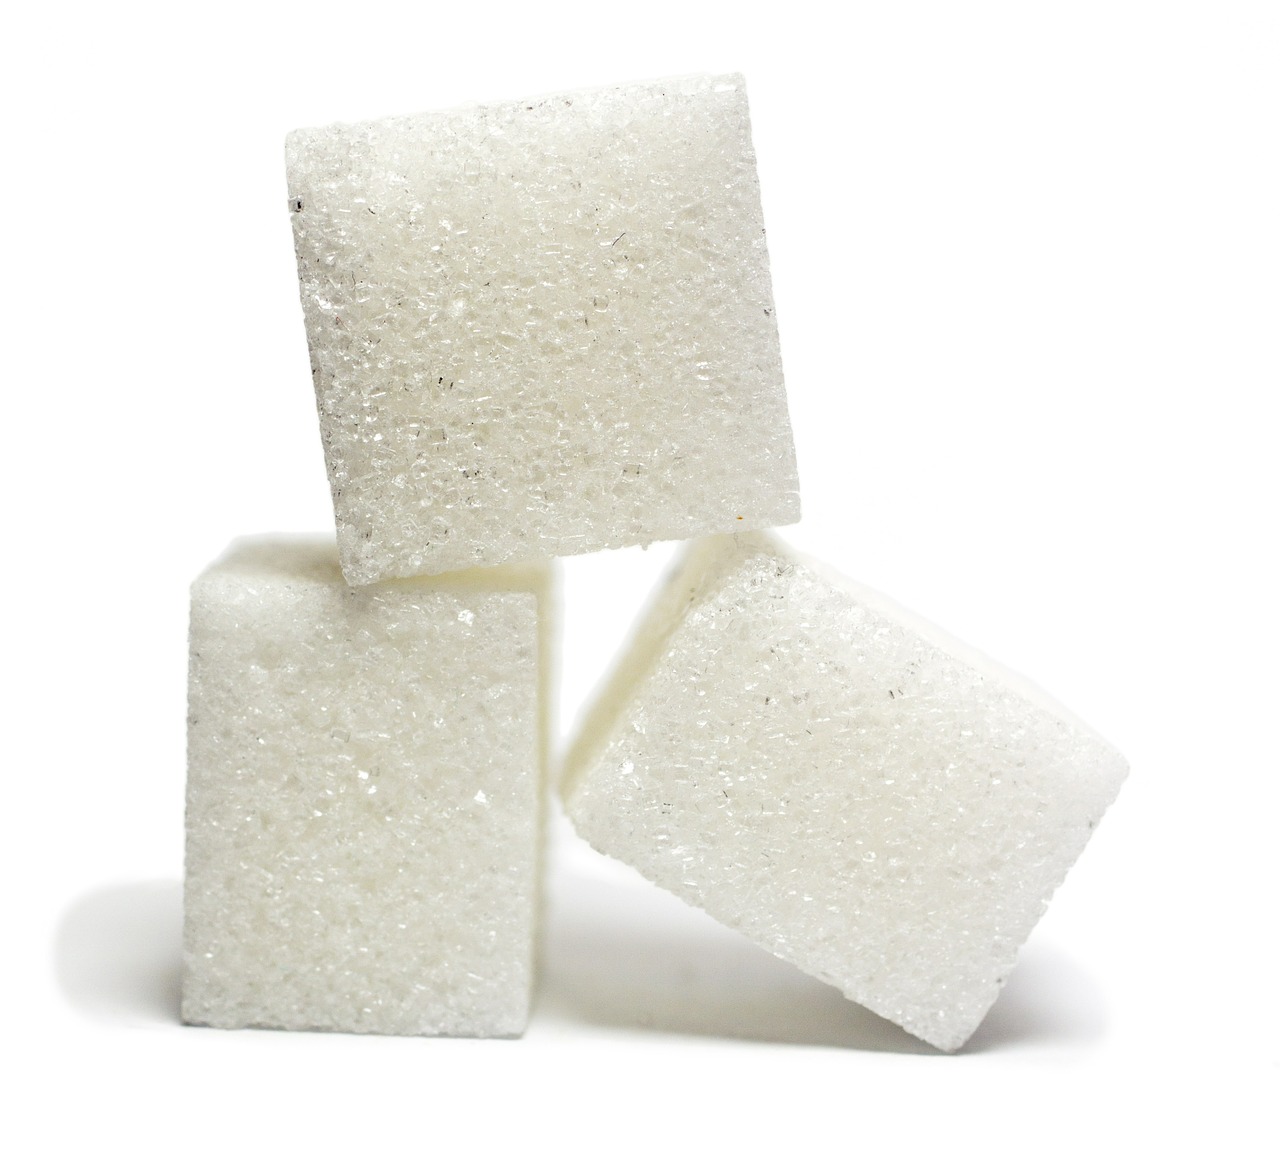 てんさい糖を代用 砂糖の分量と比べてどうなのか？代わりになるのか調べてみました。